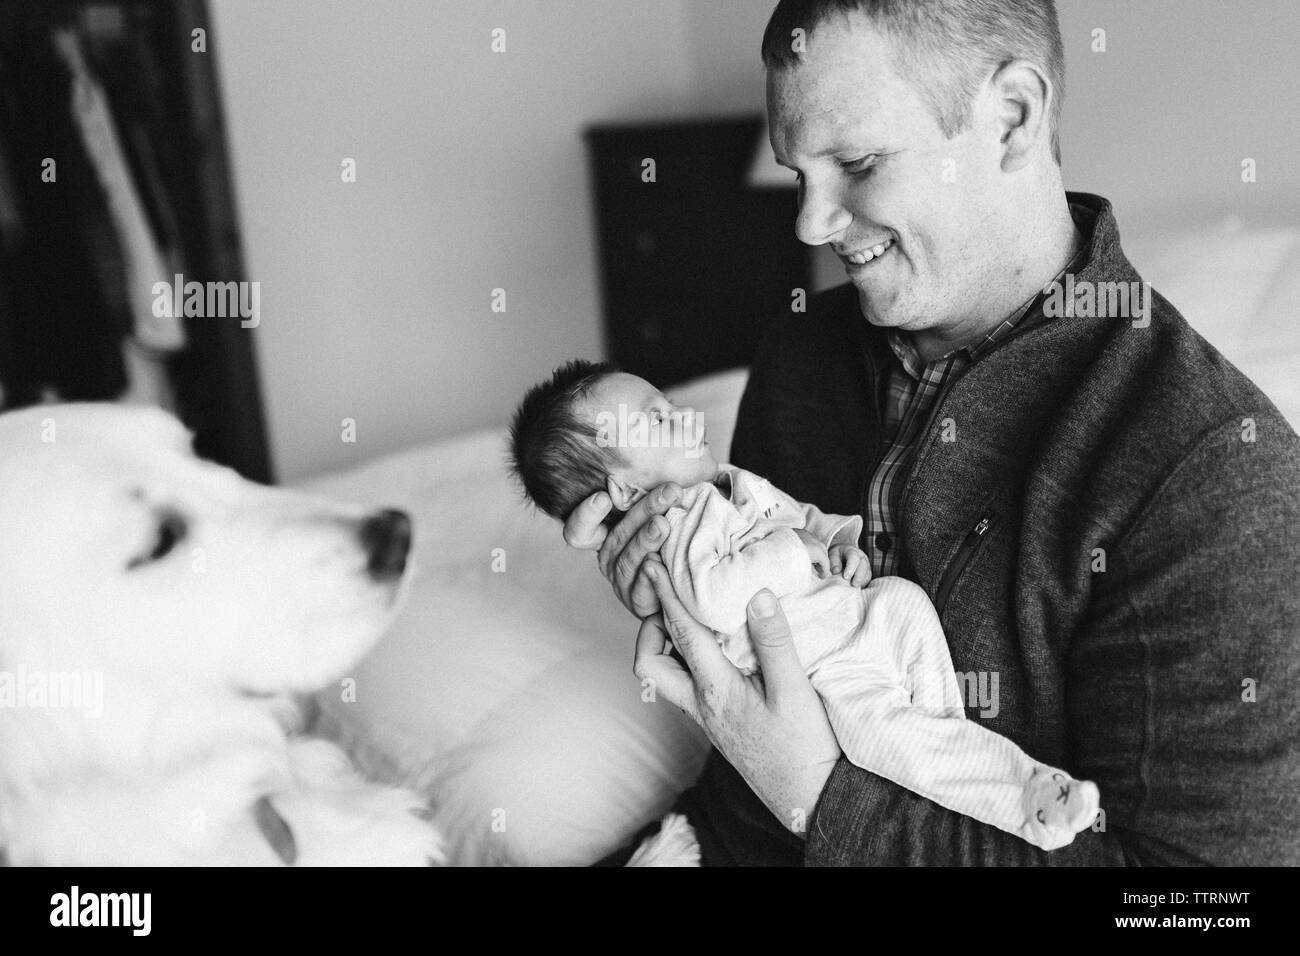 Glücklicher neuer Vater hält sein neugeborenes Baby Mädchen auf dem Bett, während Hund Uhren Stockfoto